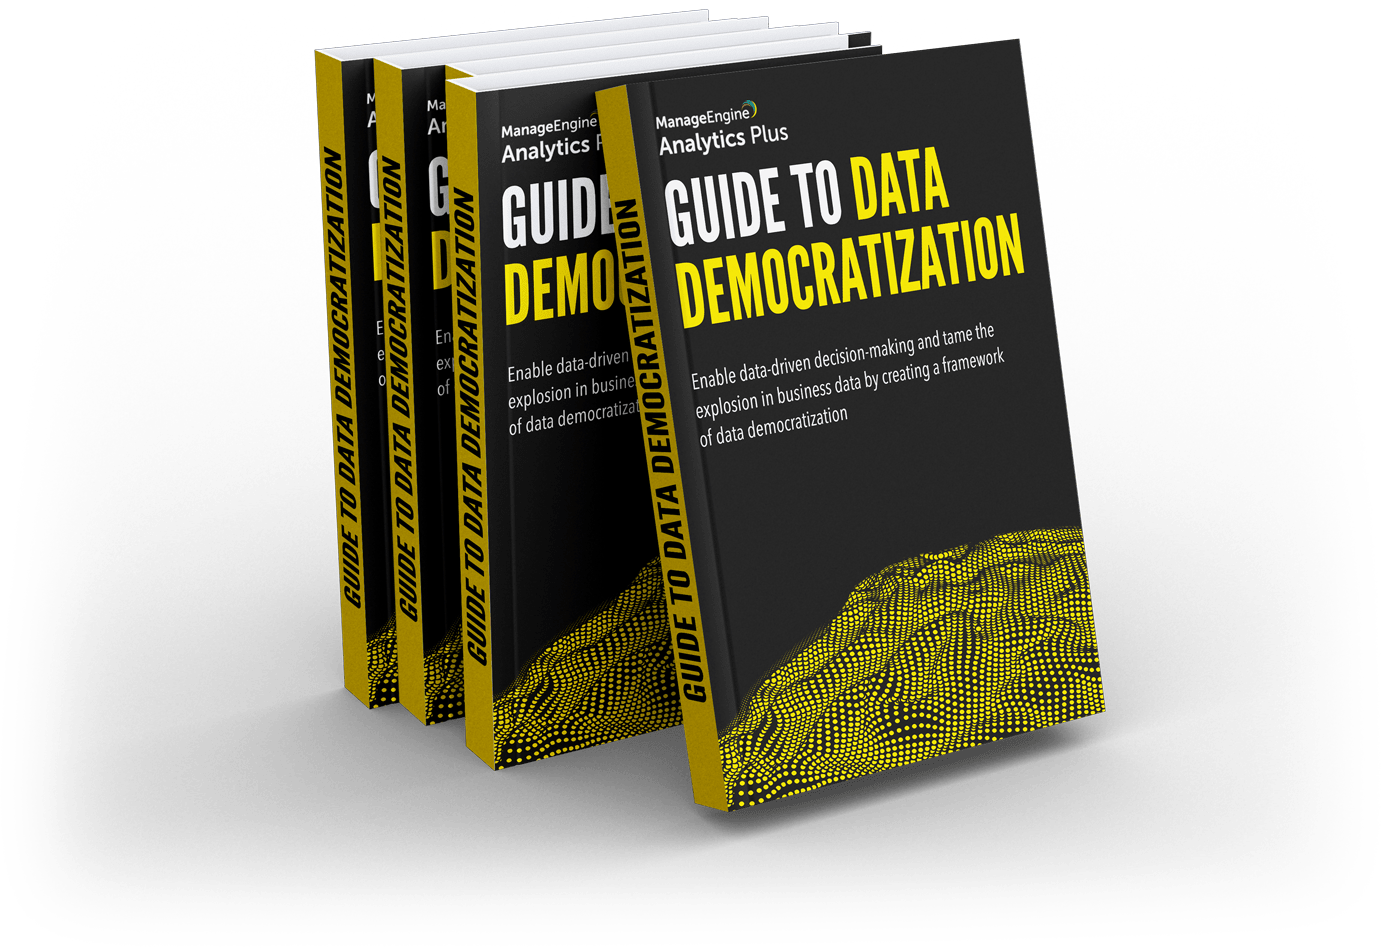 Ebook: Guía completa para la democratización de datos
de Analytics Plus de ManageEngine